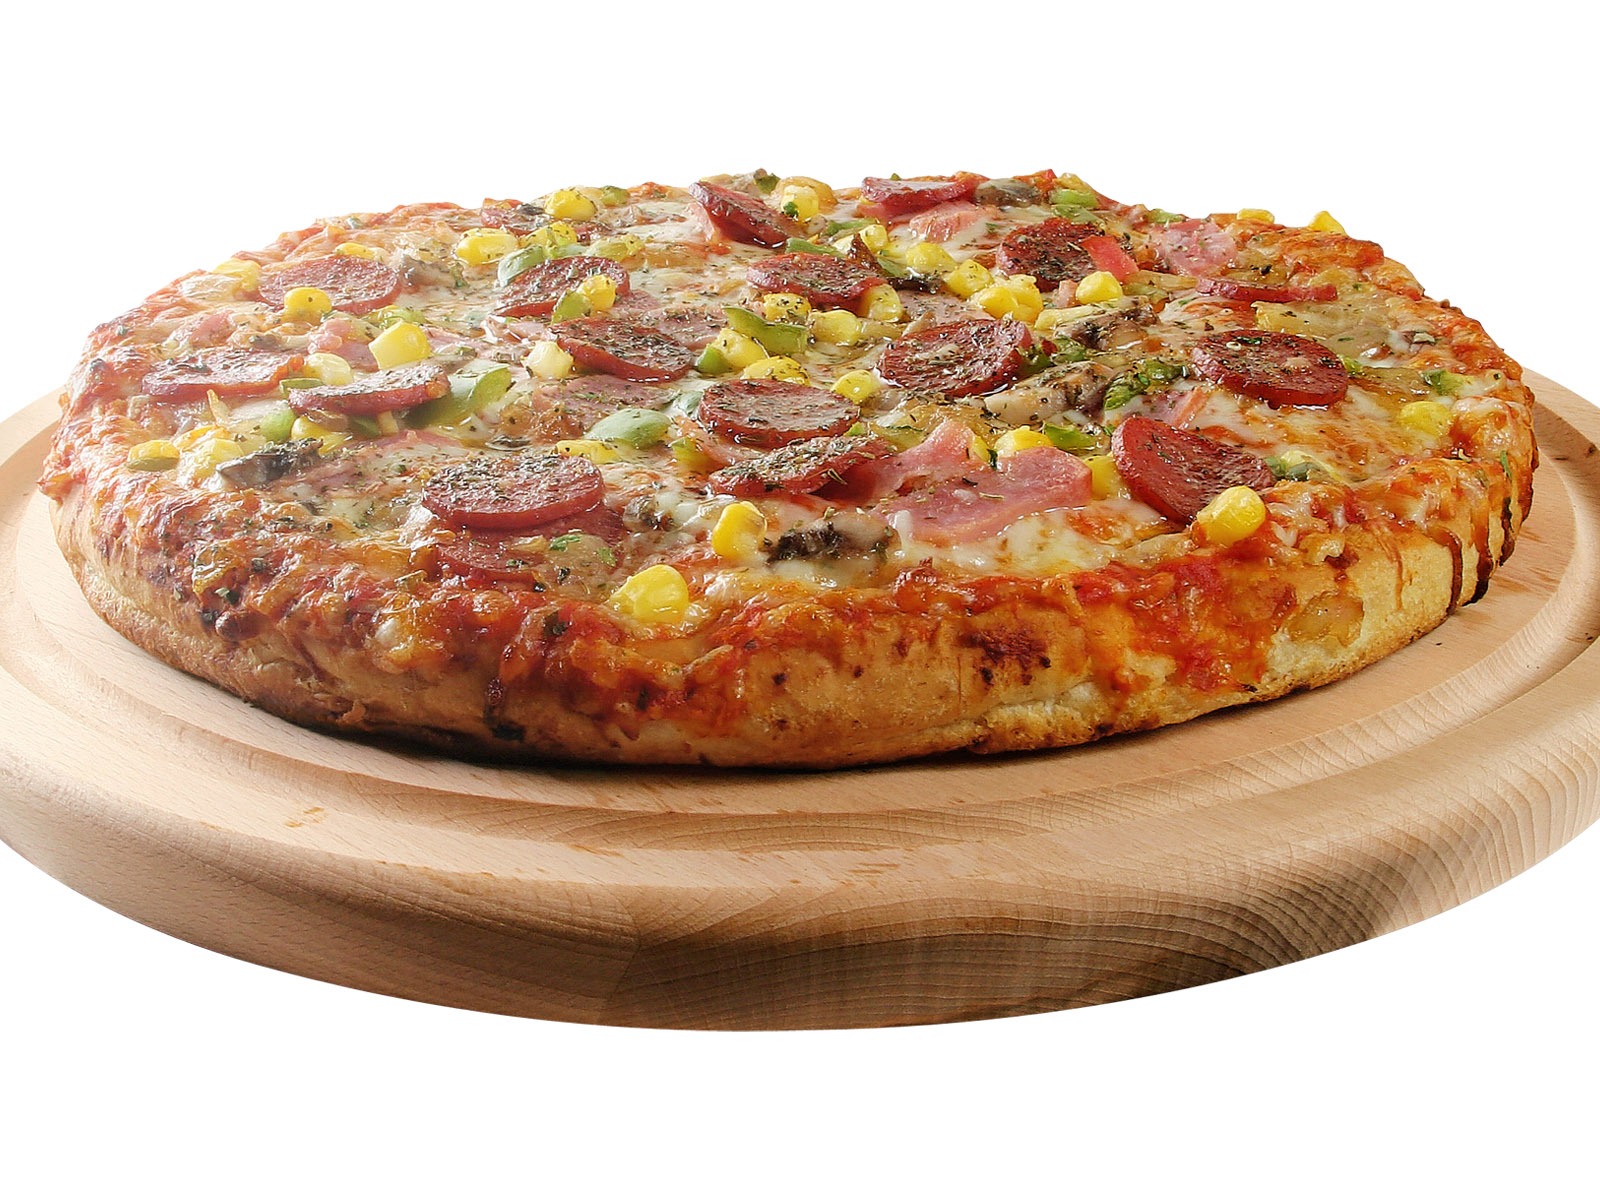 Fondos de pizzerías de Alimentos (3) #14 - 1600x1200